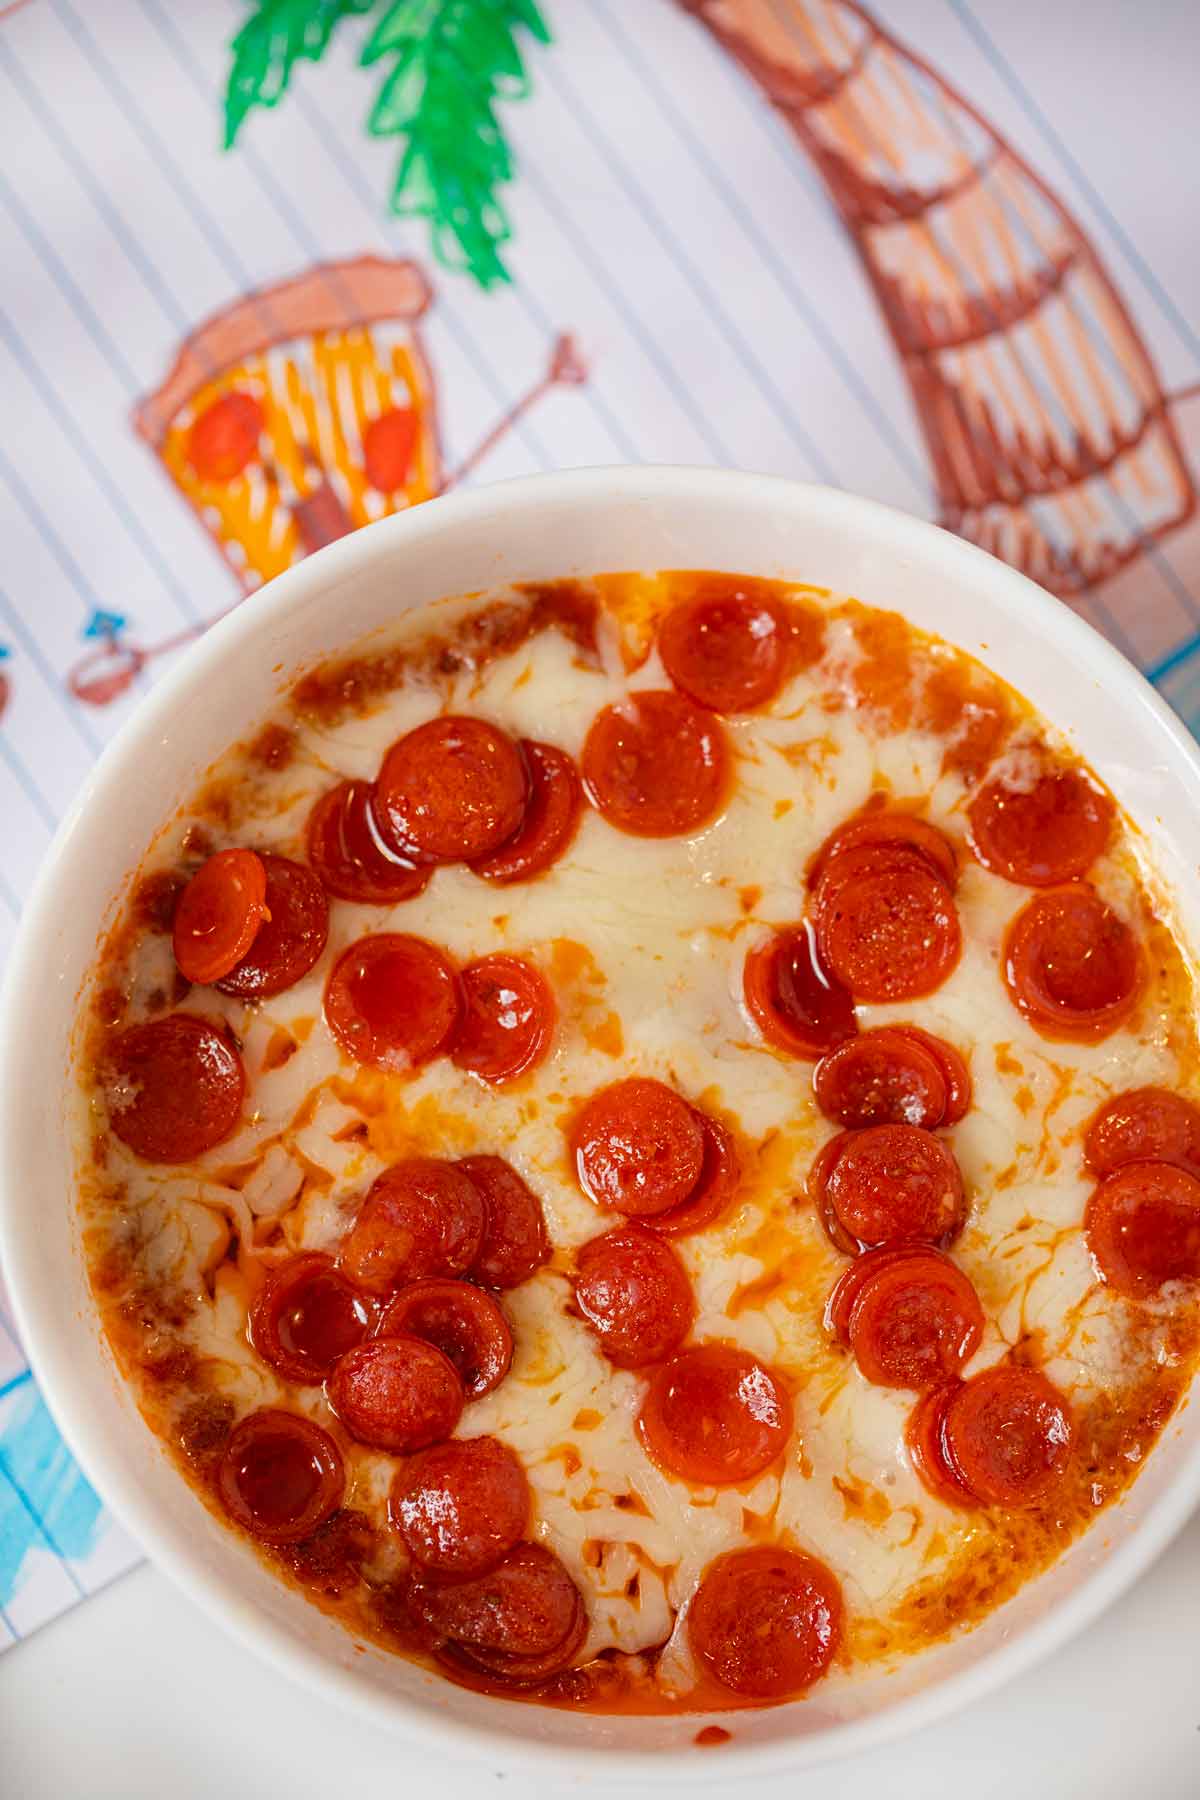 Feeding the Frugal Family: Lipton's white pizza dip